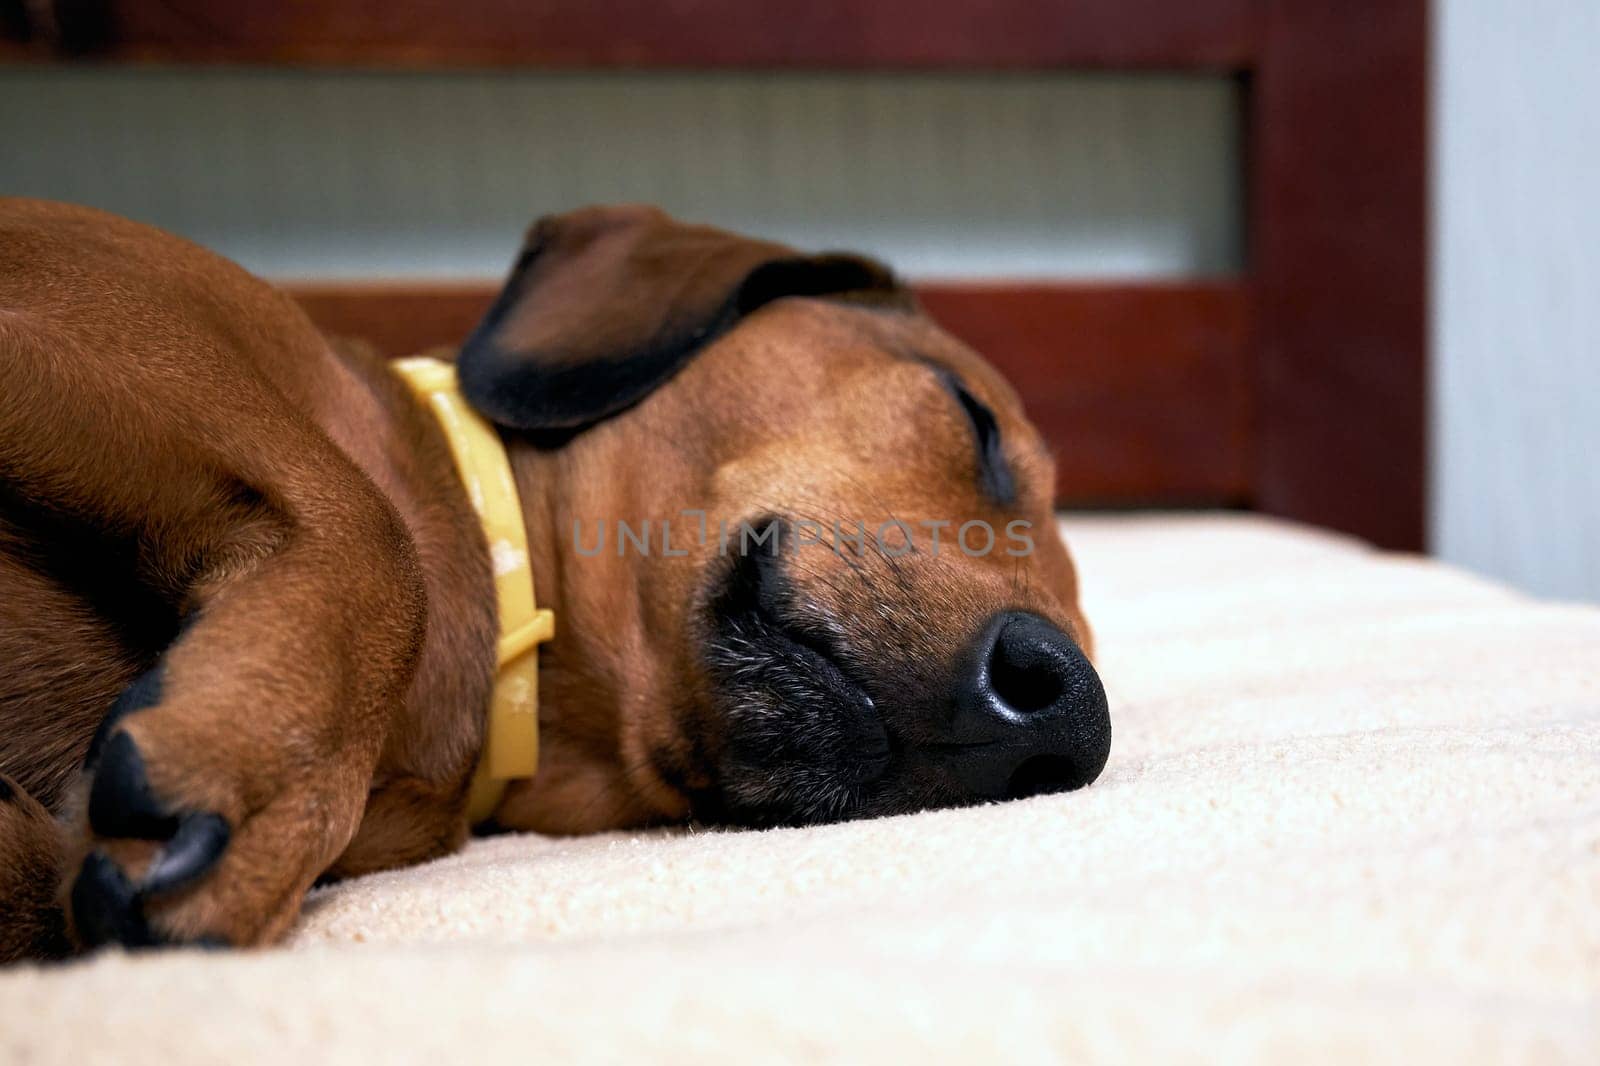 Sleeping dog on the bed. Sleeping dachshund muzzle close up